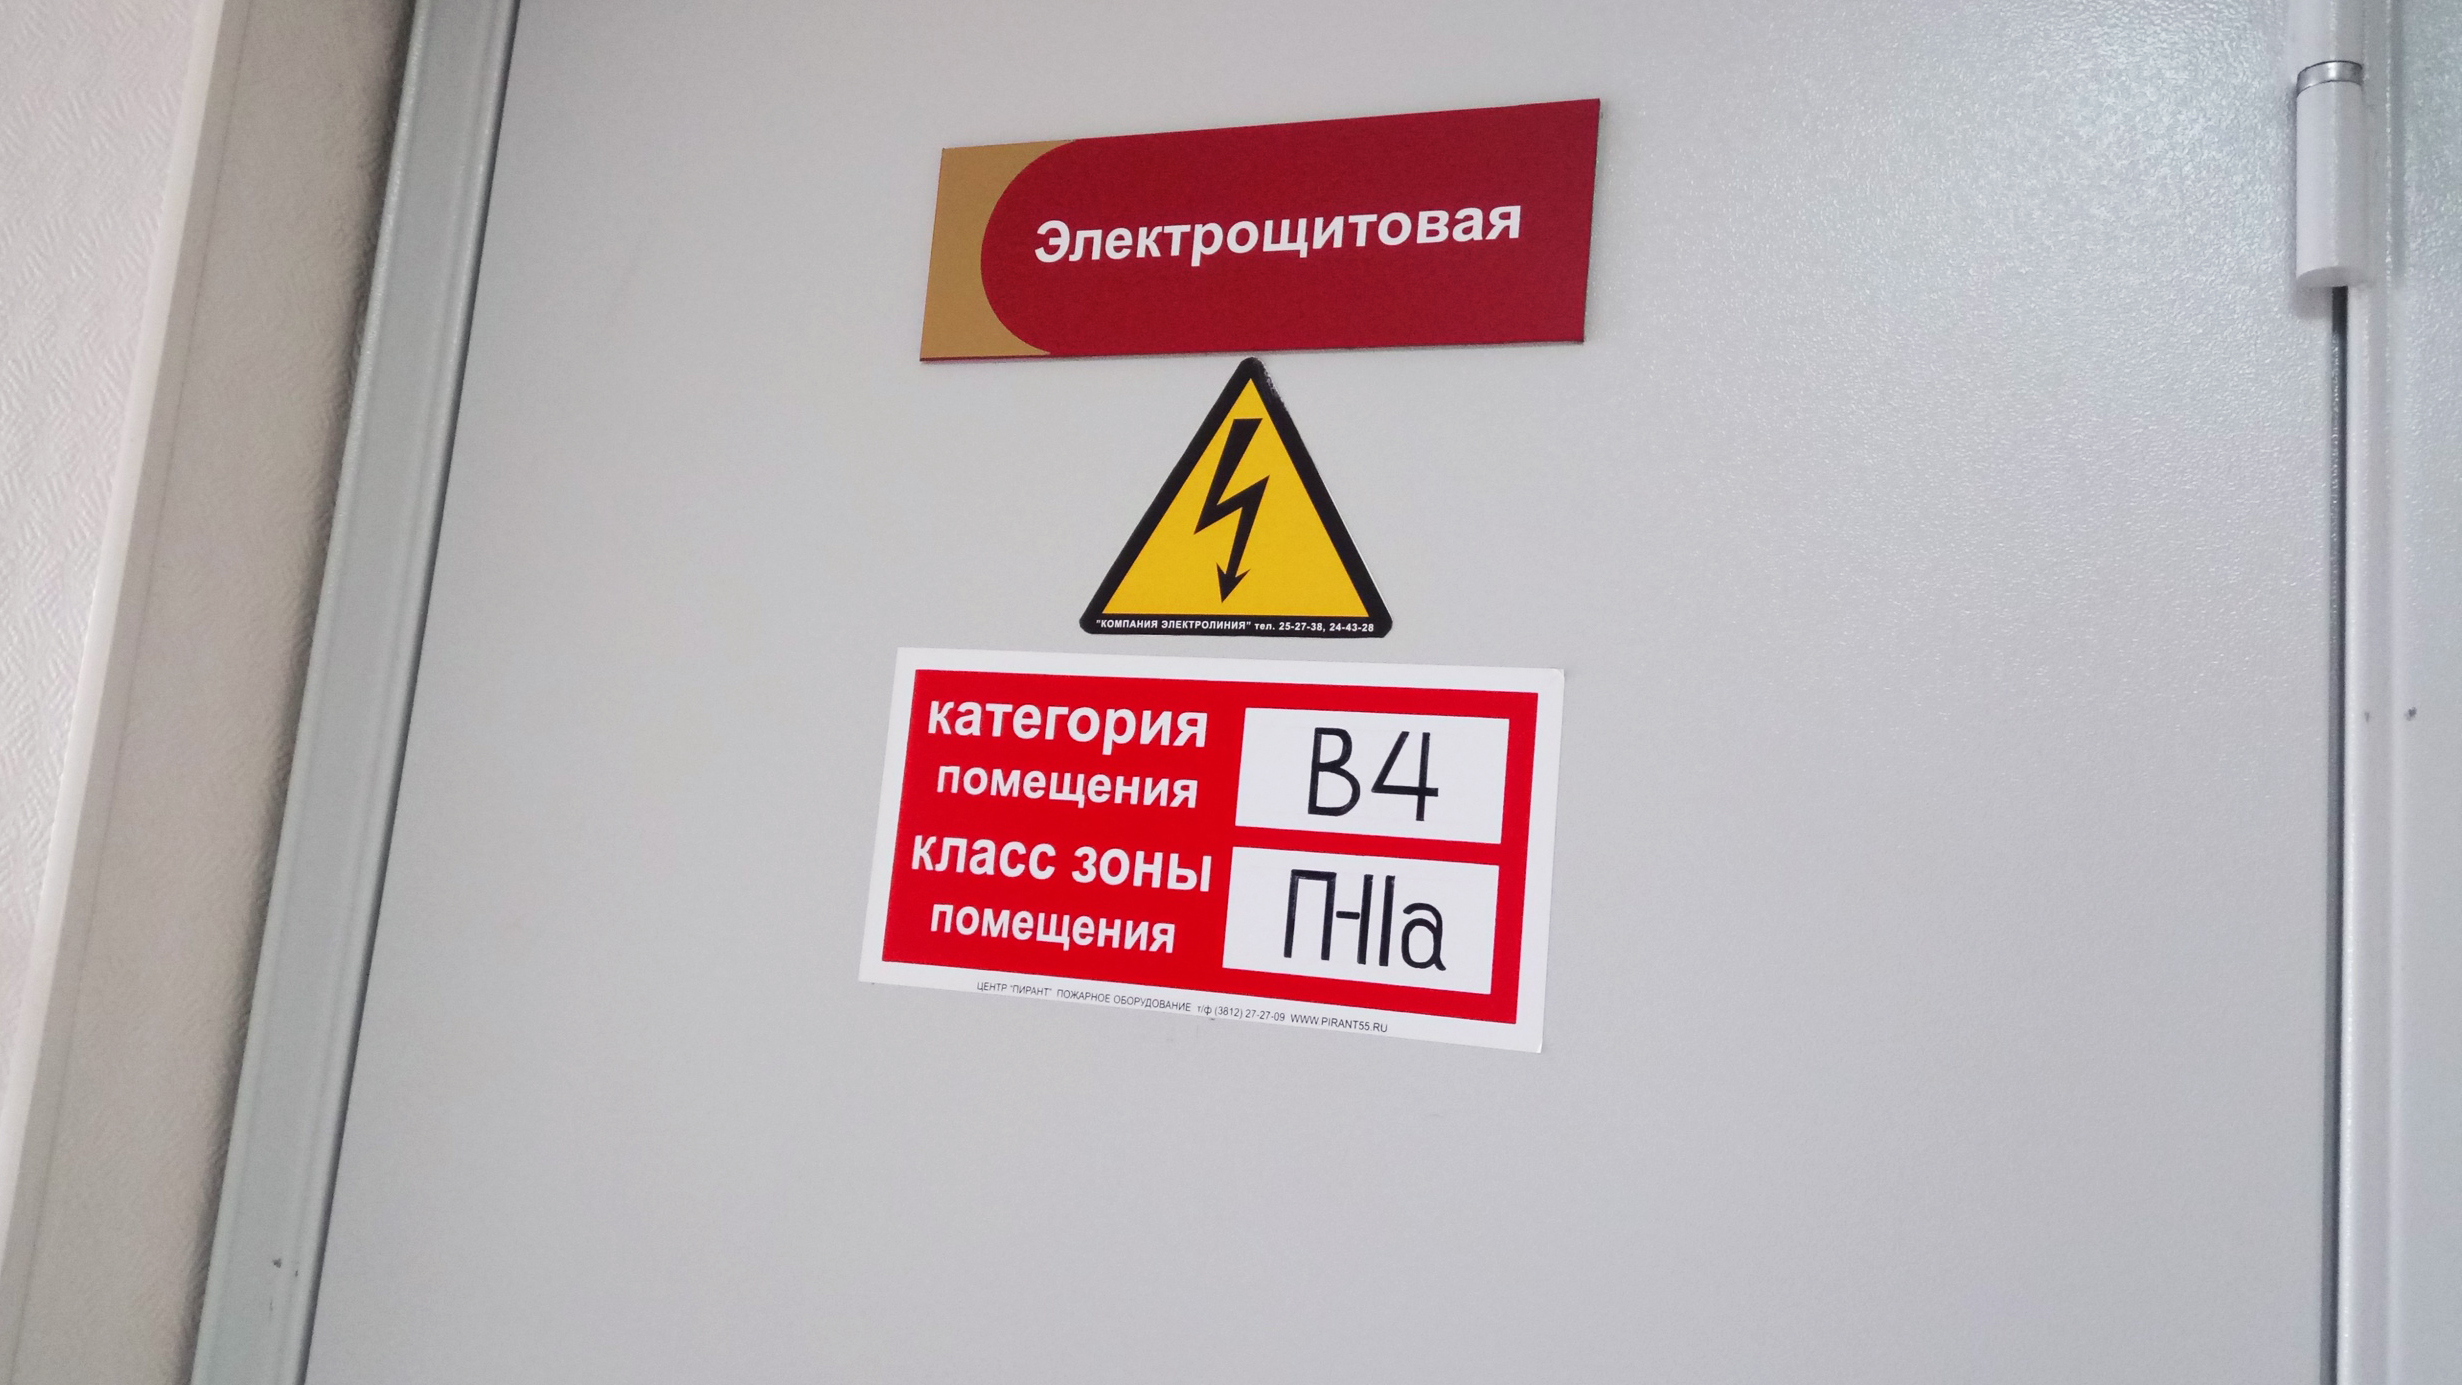 «Металлисты» нанесли ущерба почти на 2 млн рублей приморским электроподстанциям